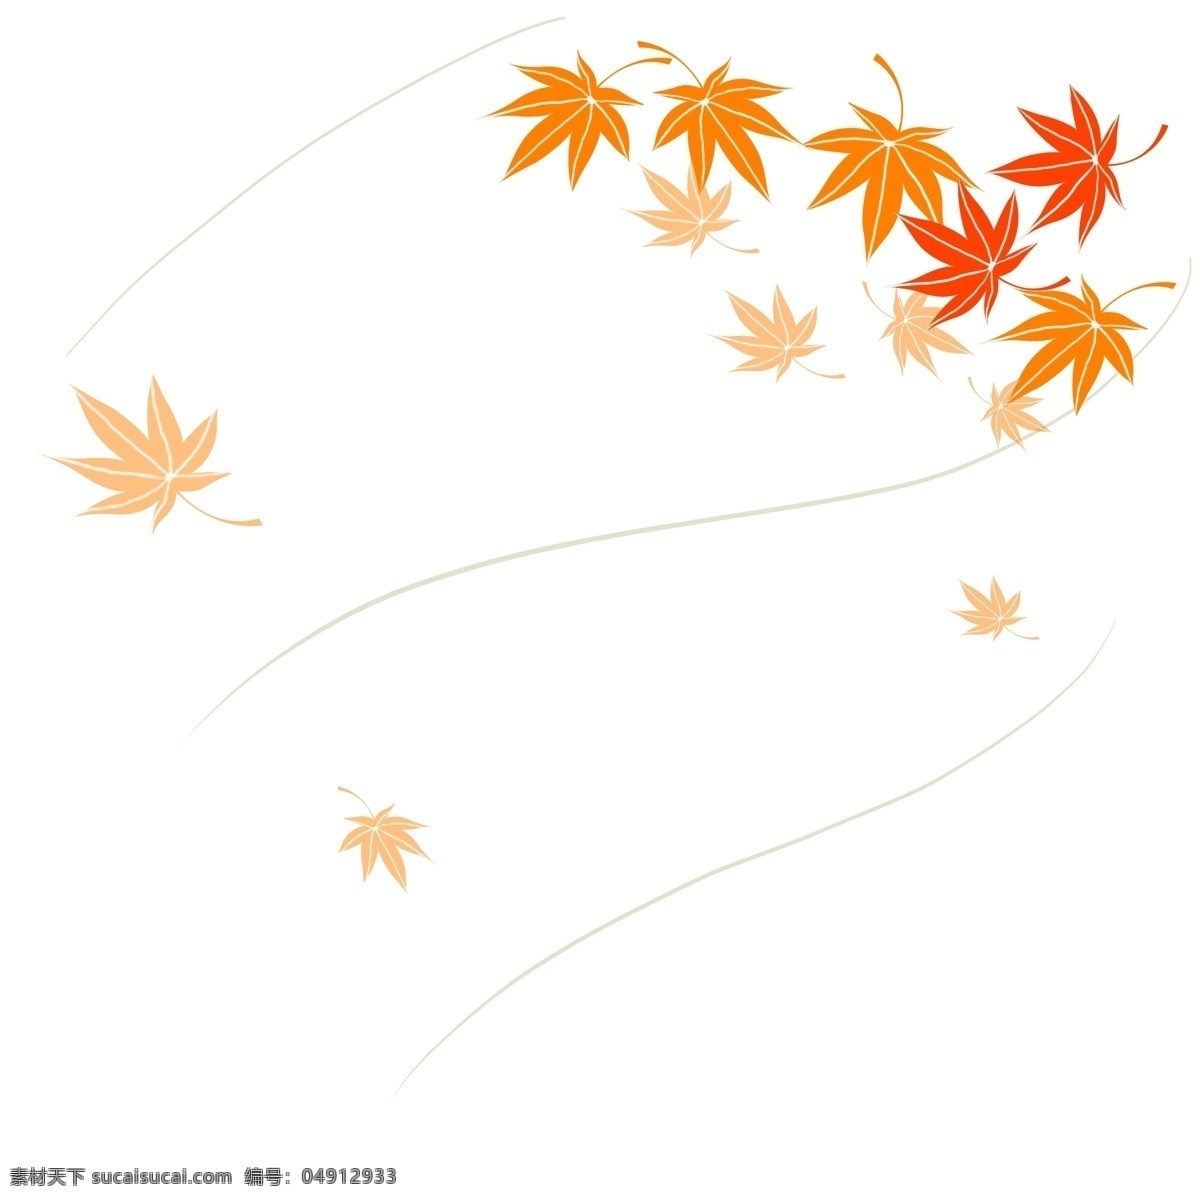 风吹 散 落叶 漂浮 吹风效果 风 飘落 飘散 飘洒 散落 叶子 banner 海报 秋季 秋天 方向 动感